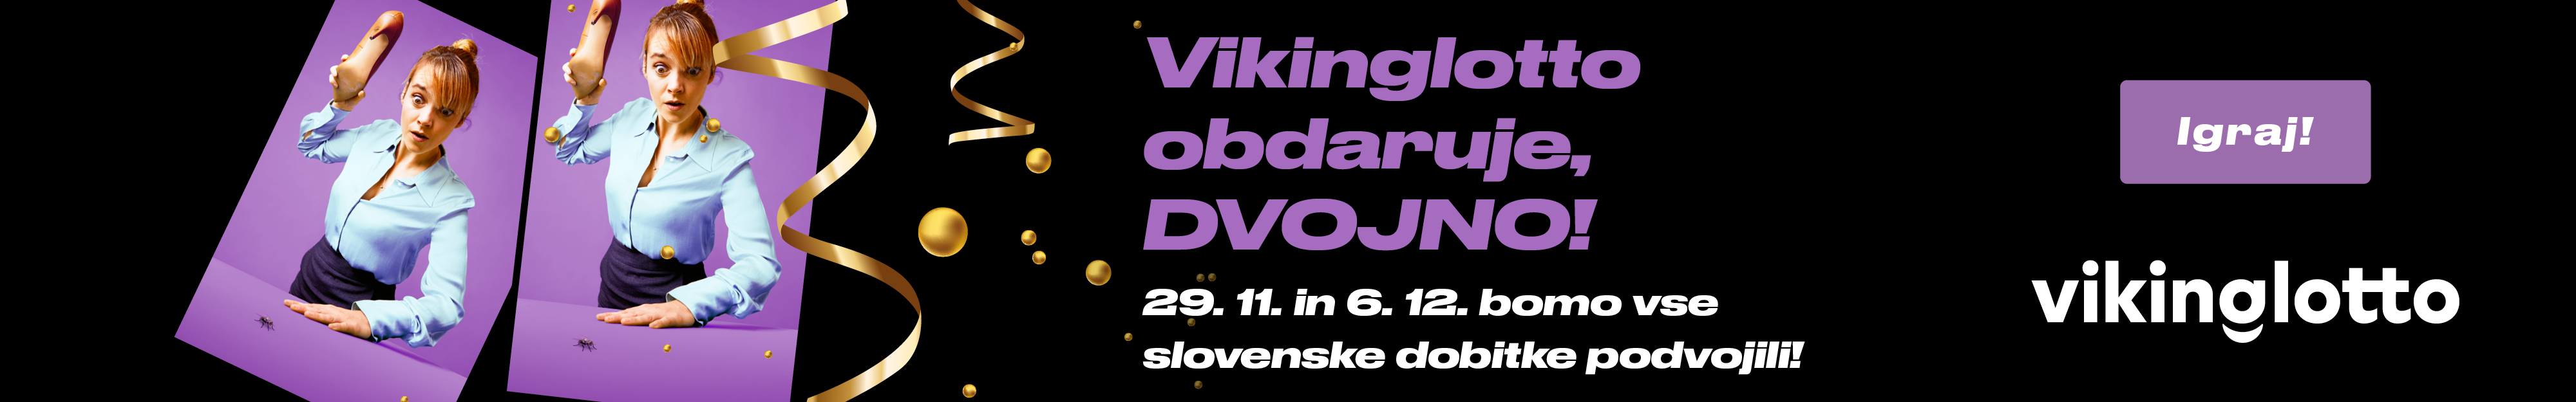 Vikinglotto obdaruje dvojno. 29.11. in 6.12. bomo vse slovenske dobitke podvojili!